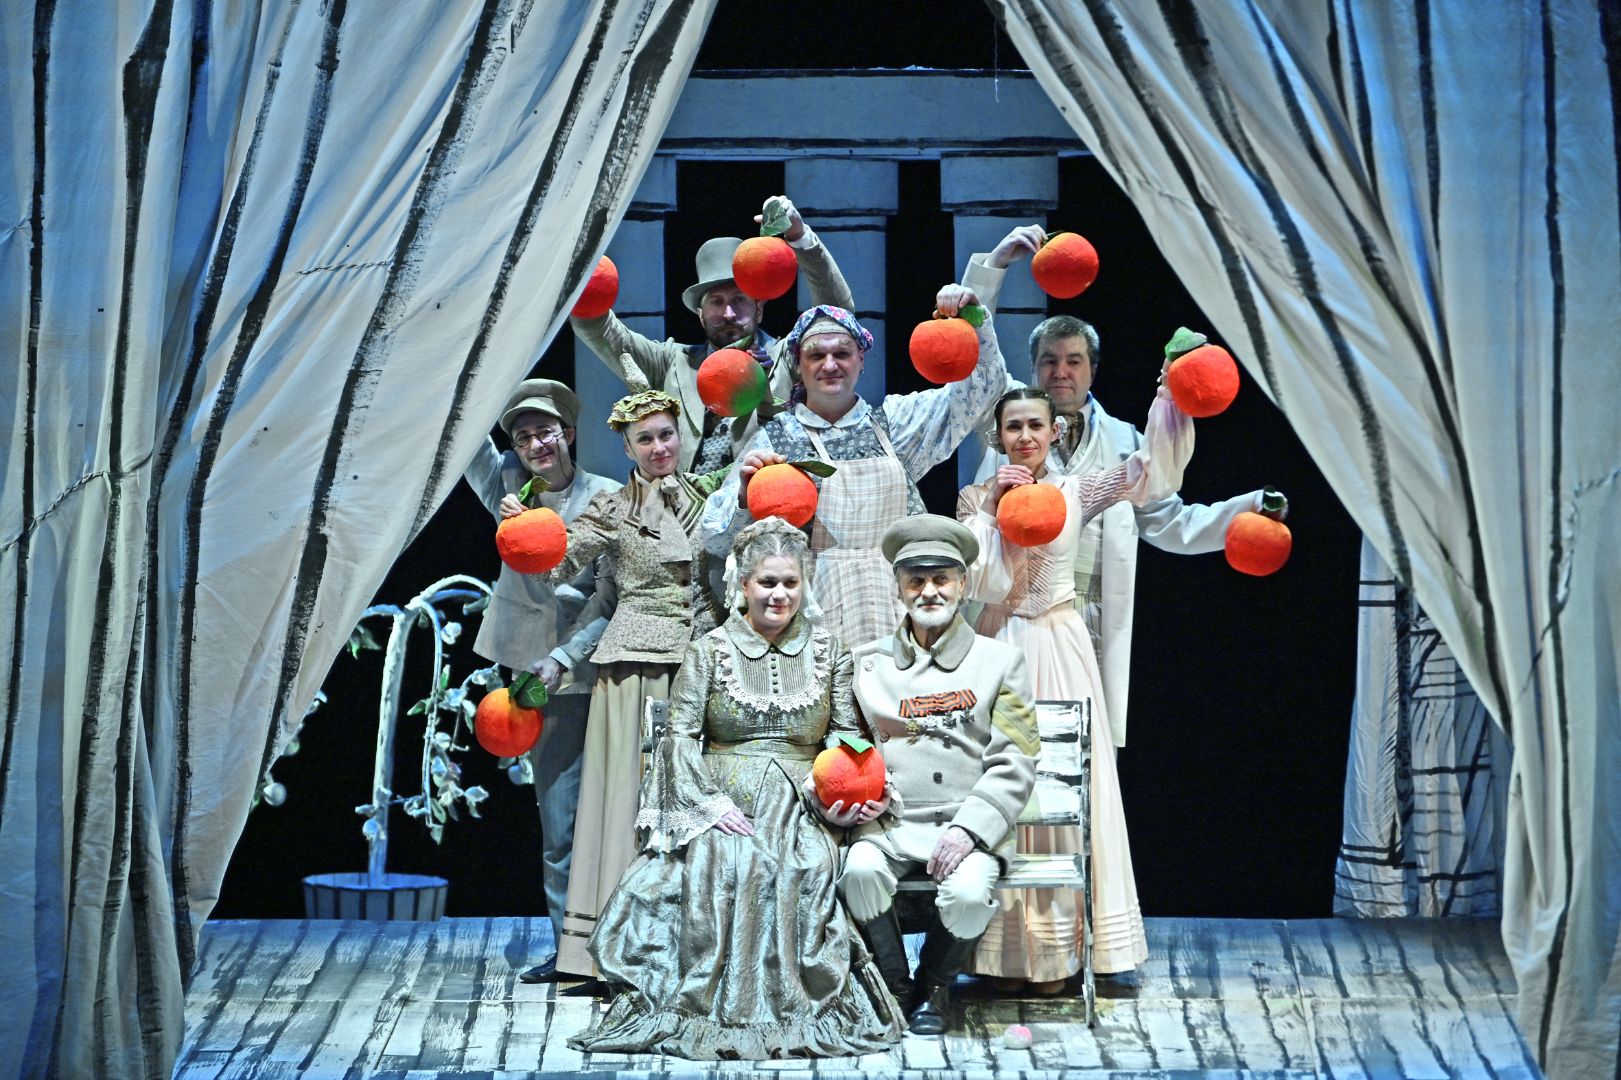 Спектакли «Наливные яблоки» и «Диалог одиноких душ» - гастроли Донецкого театра в Югра-Классик